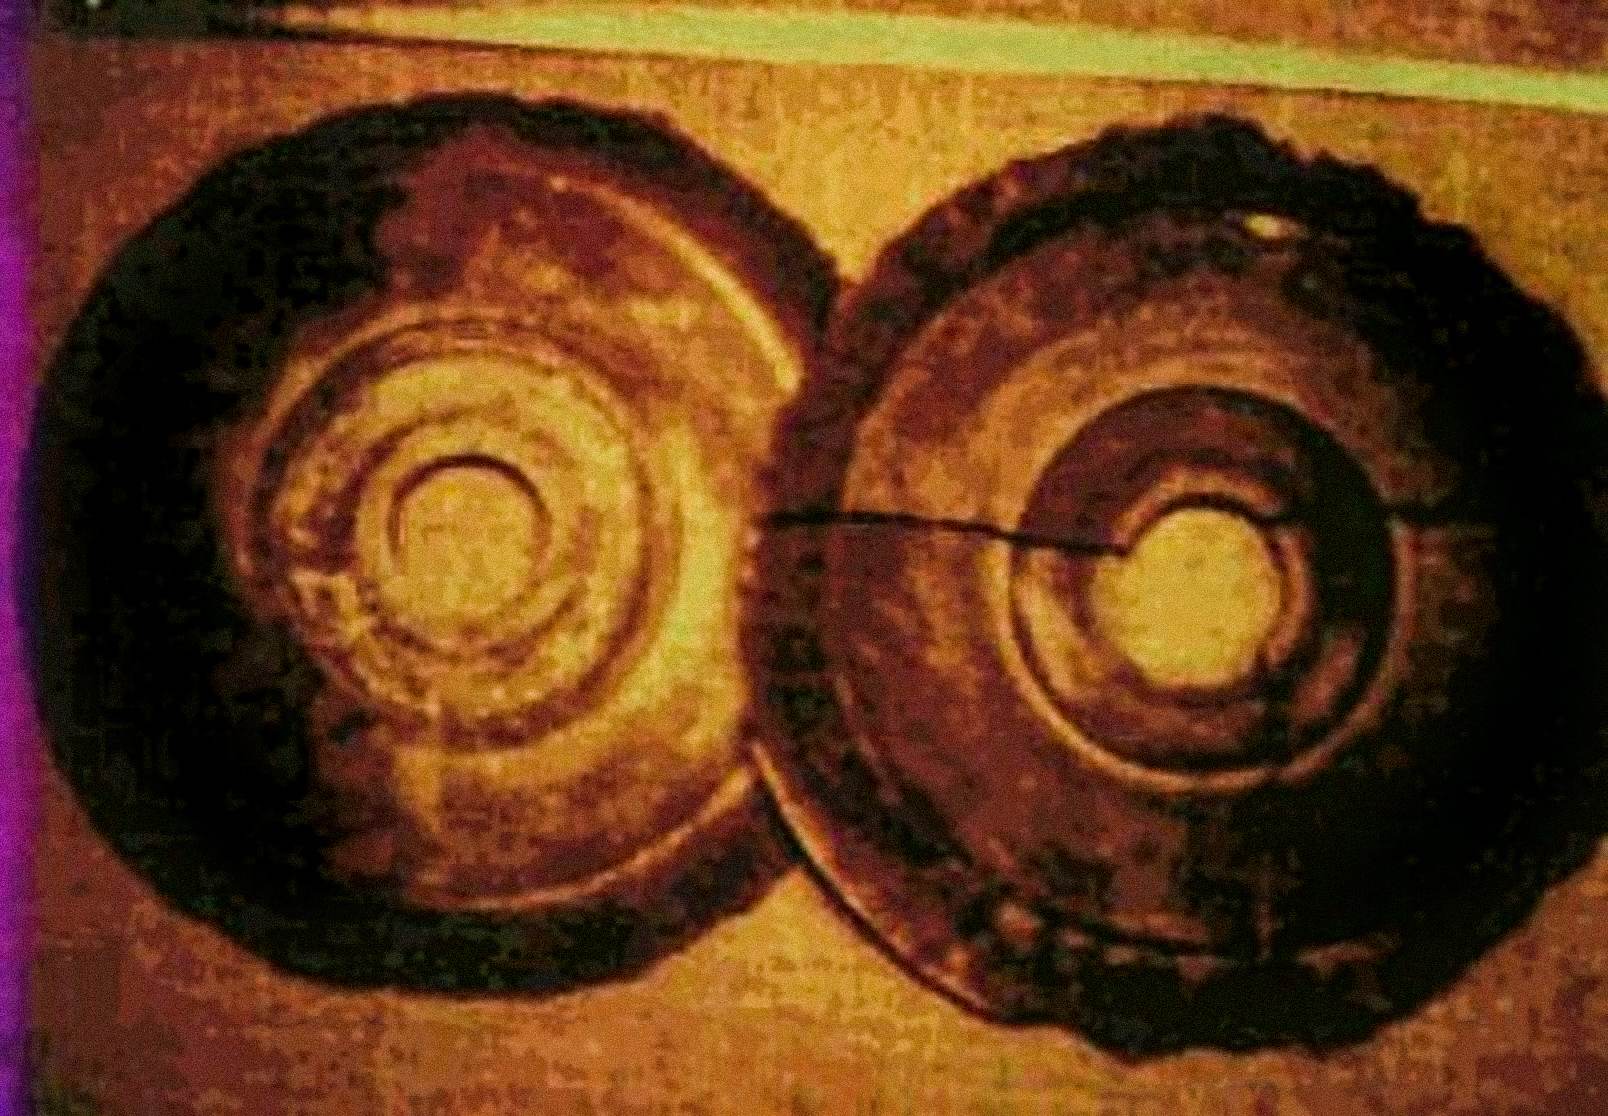 1974 fotografierte Ernst Wegerer, ein österreichischer Ingenieur, zwei Scheiben, die den Beschreibungen der Dropa-Steine ​​entsprachen. Er war auf einer Führung durch das Banpo-Museum in Xian, als er die ausgestellten Steinscheiben sah. Er behauptet, er habe ein Loch in der Mitte jeder Scheibe und Hieroglyphen in teilweise zerbröckelten spiralförmigen Rillen gesehen.